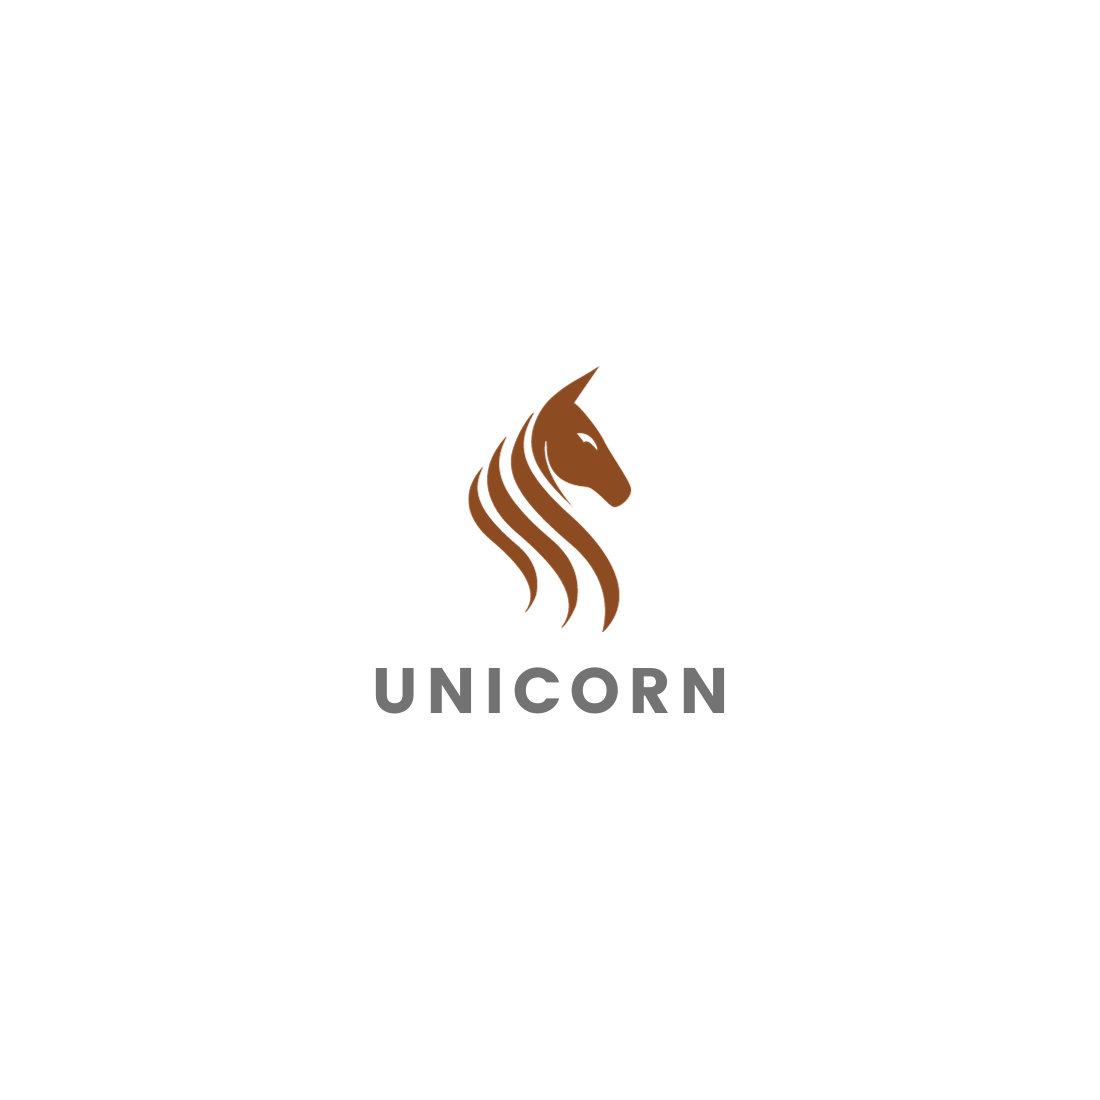 4 horse logo called unicorn cover image.